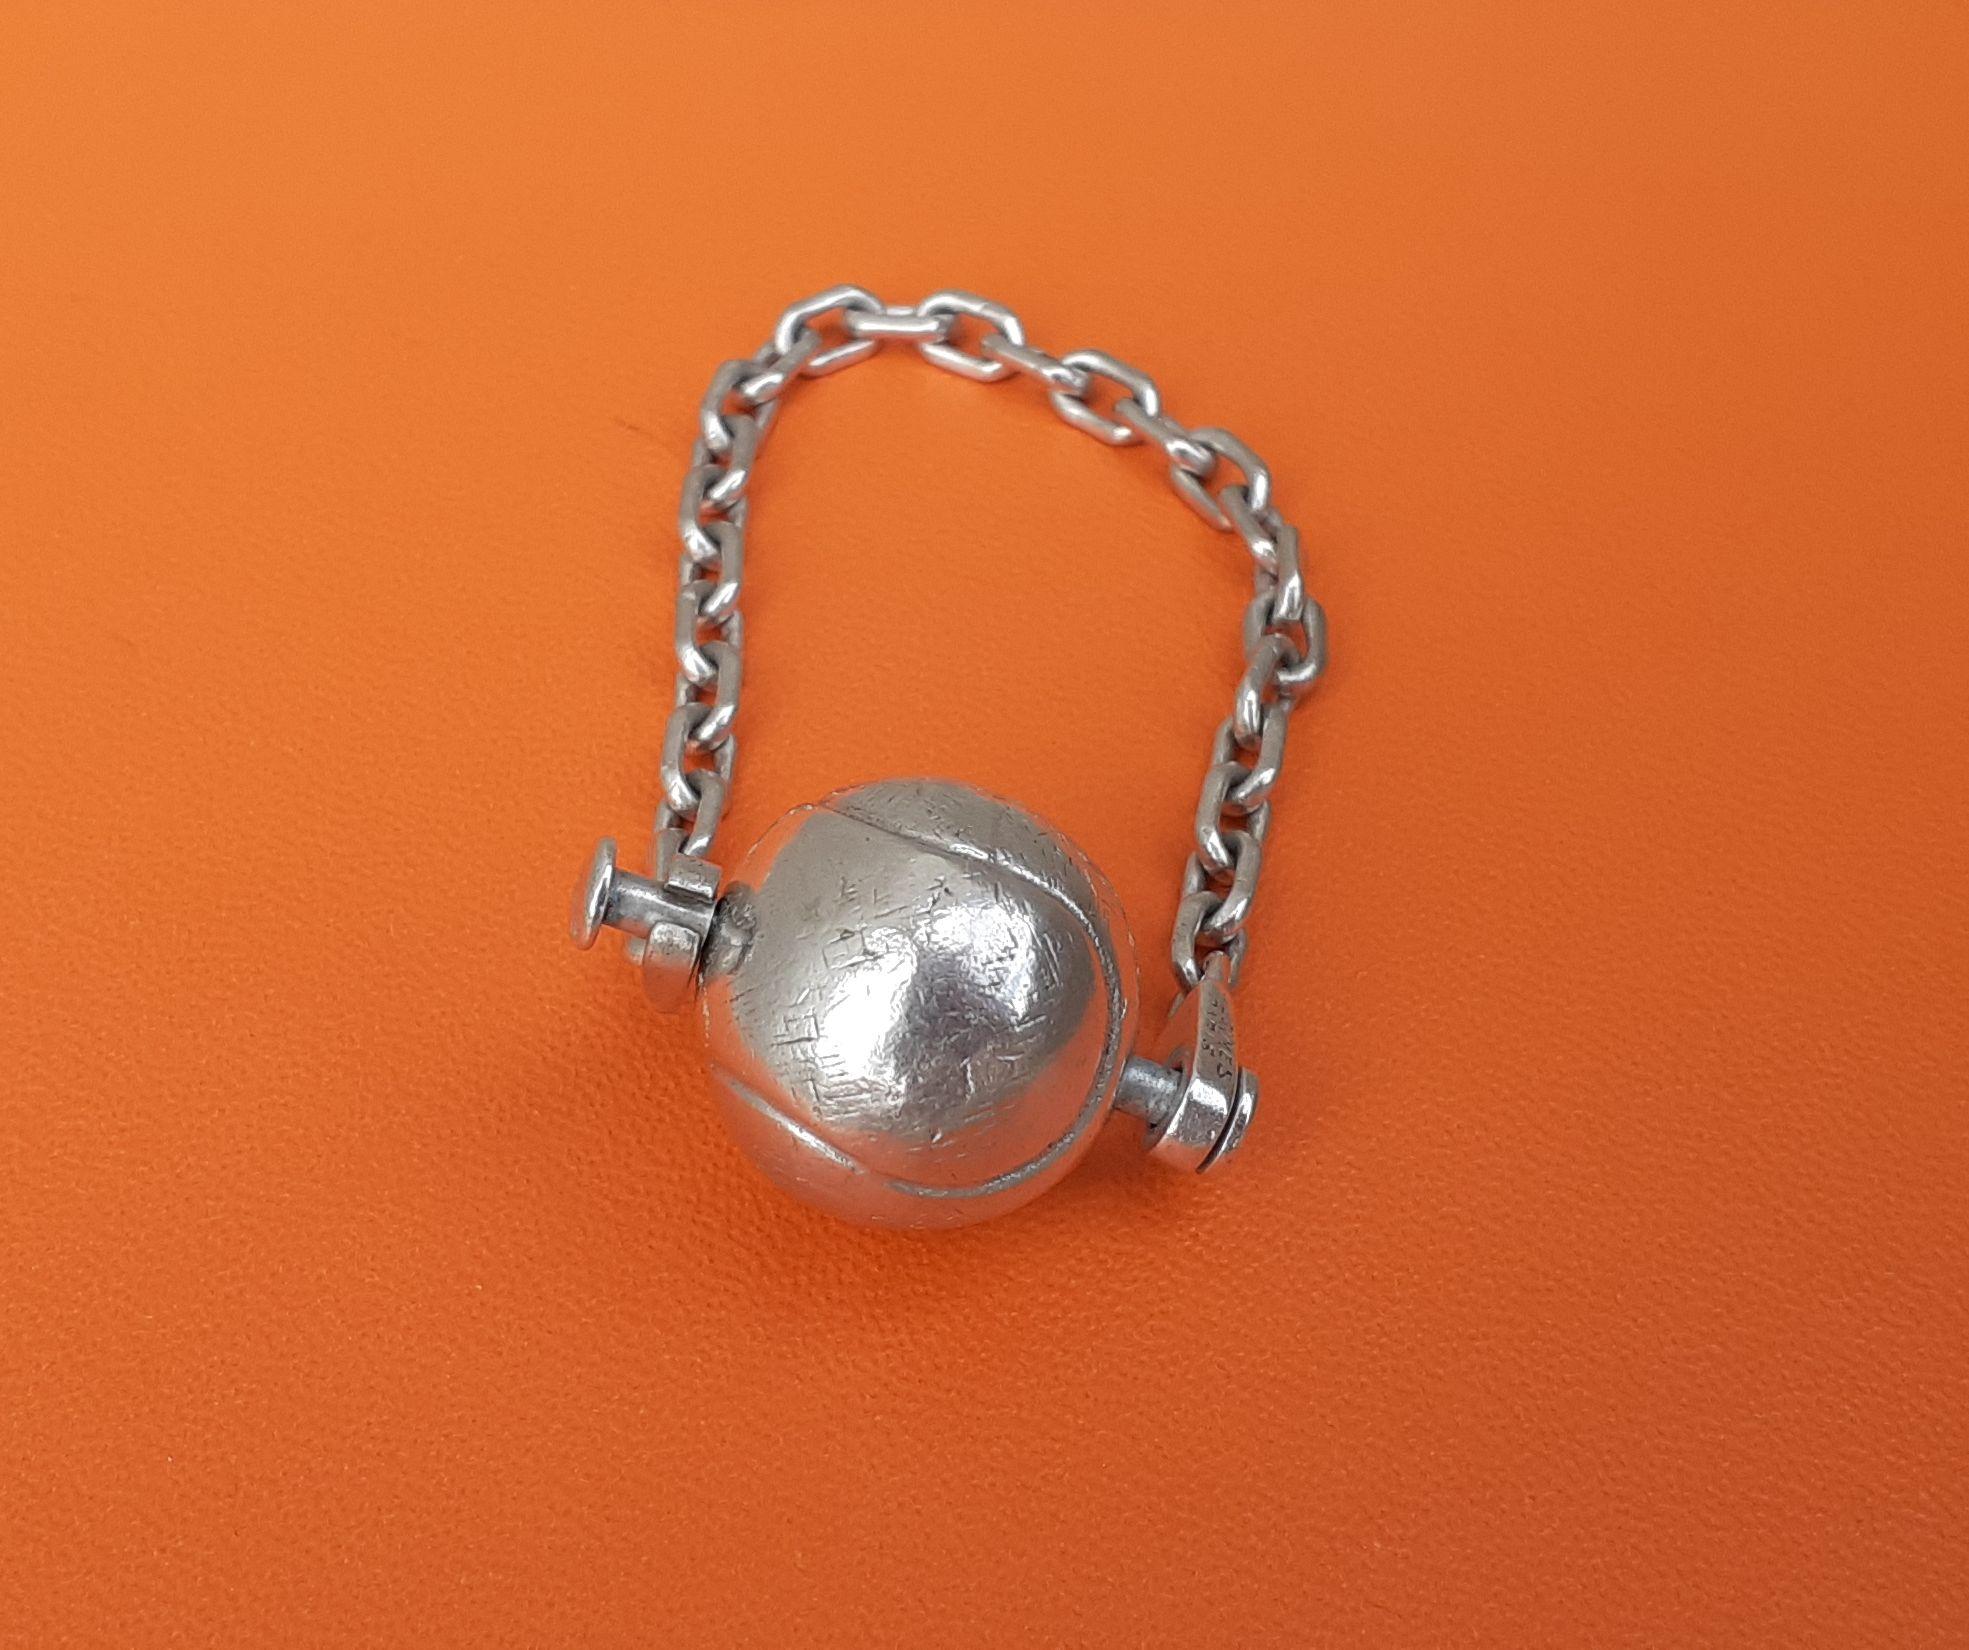 Seltener authentischer Hermès Schlüsselanhänger

In Form eines Tennisballs

Vintage By

Hergestellt aus Silber

Farbvarianten: Silber

